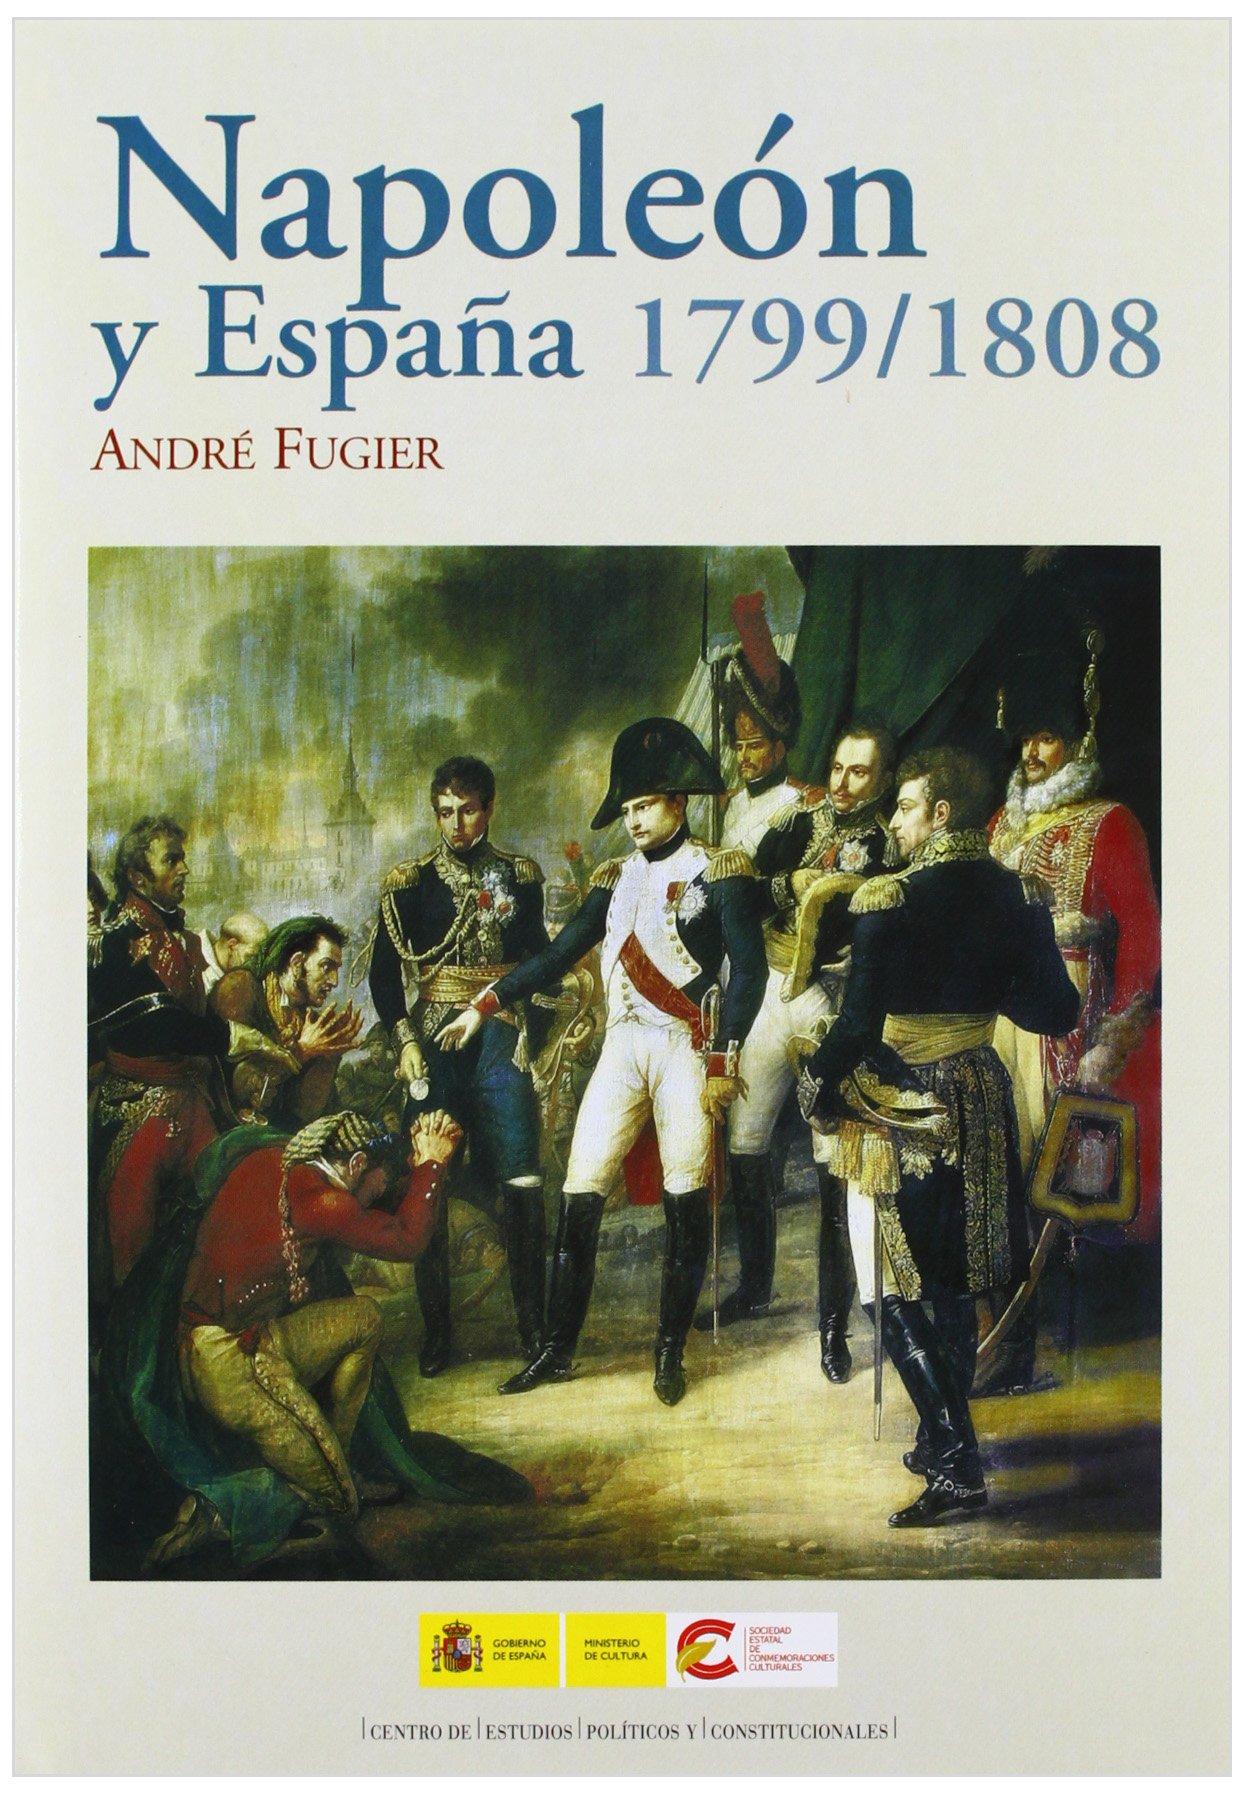 Napoleón y españa 1799-1808